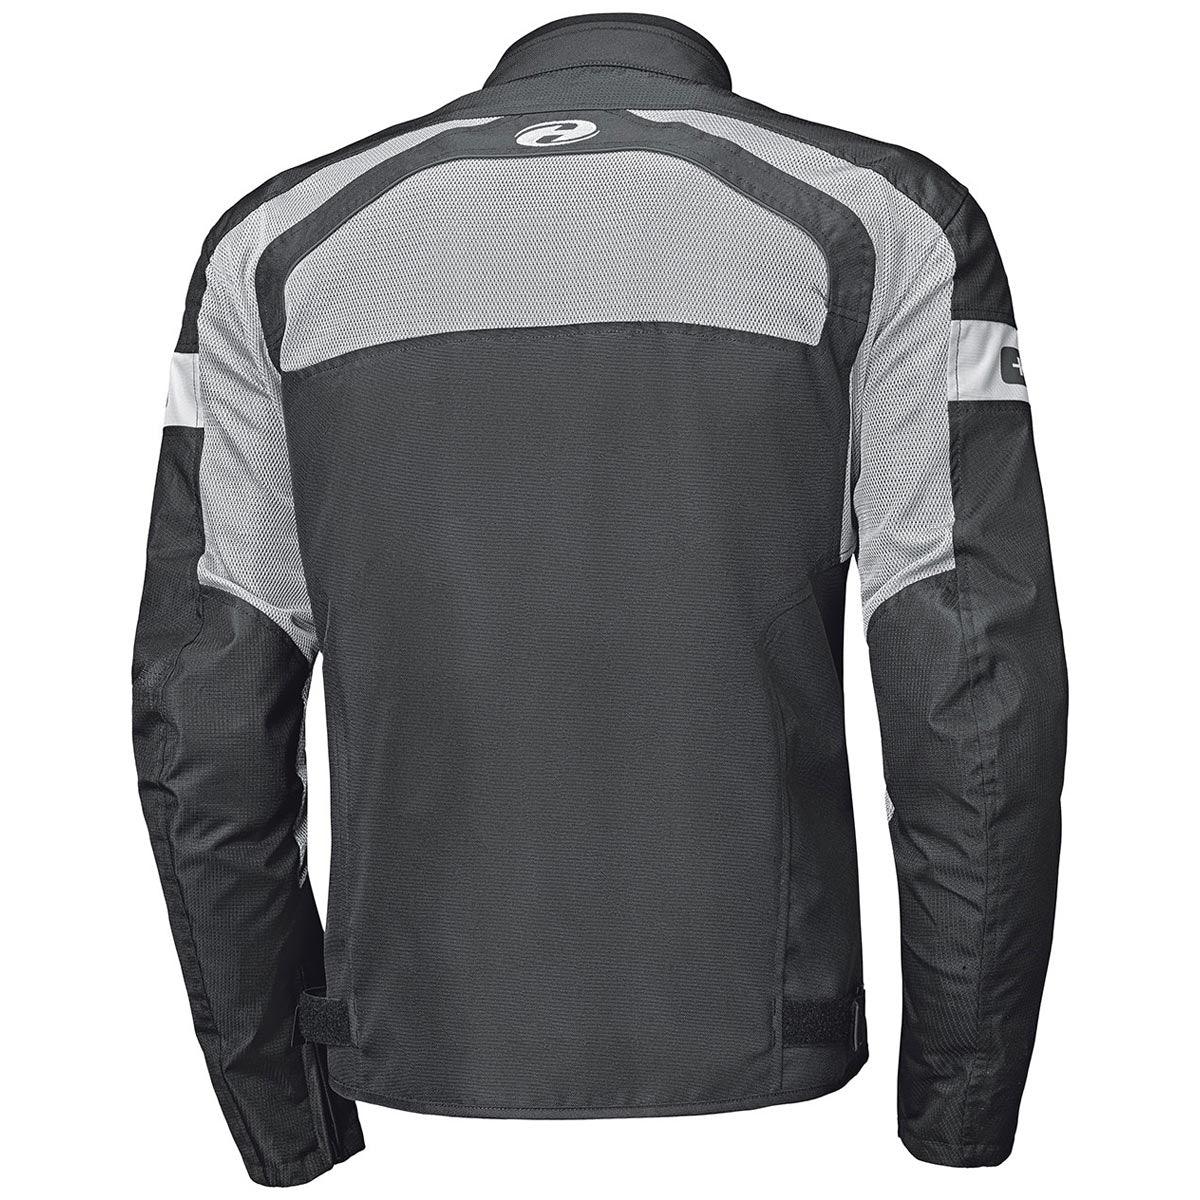 Held 62030 Tropic 3.0 Jacket Ladies Air Black Grey - Motorcycle Clothing